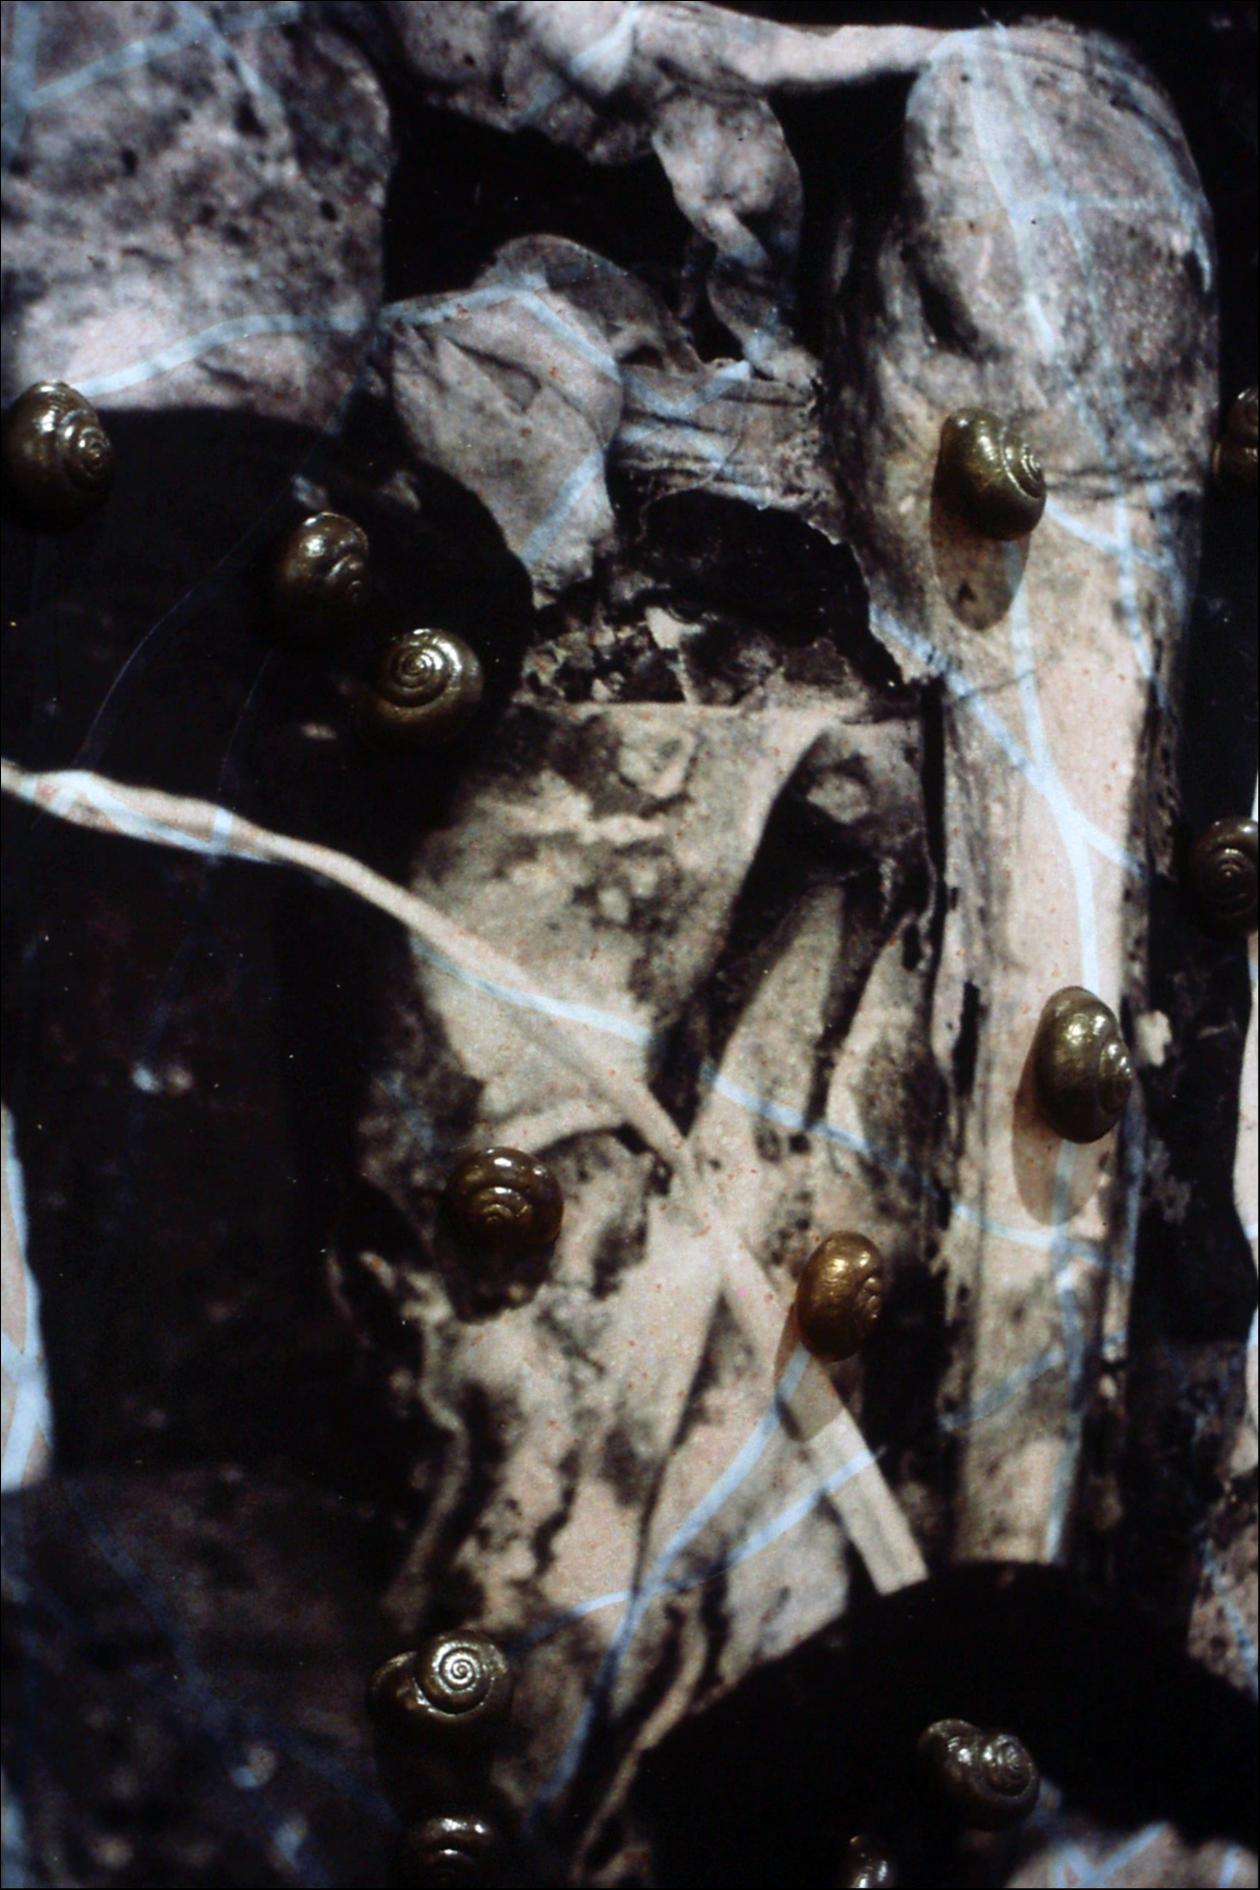 Escultura de Carmen Marcos realizada en (1995) fotografía, bronce y hierro que representa la voracidad del caracol